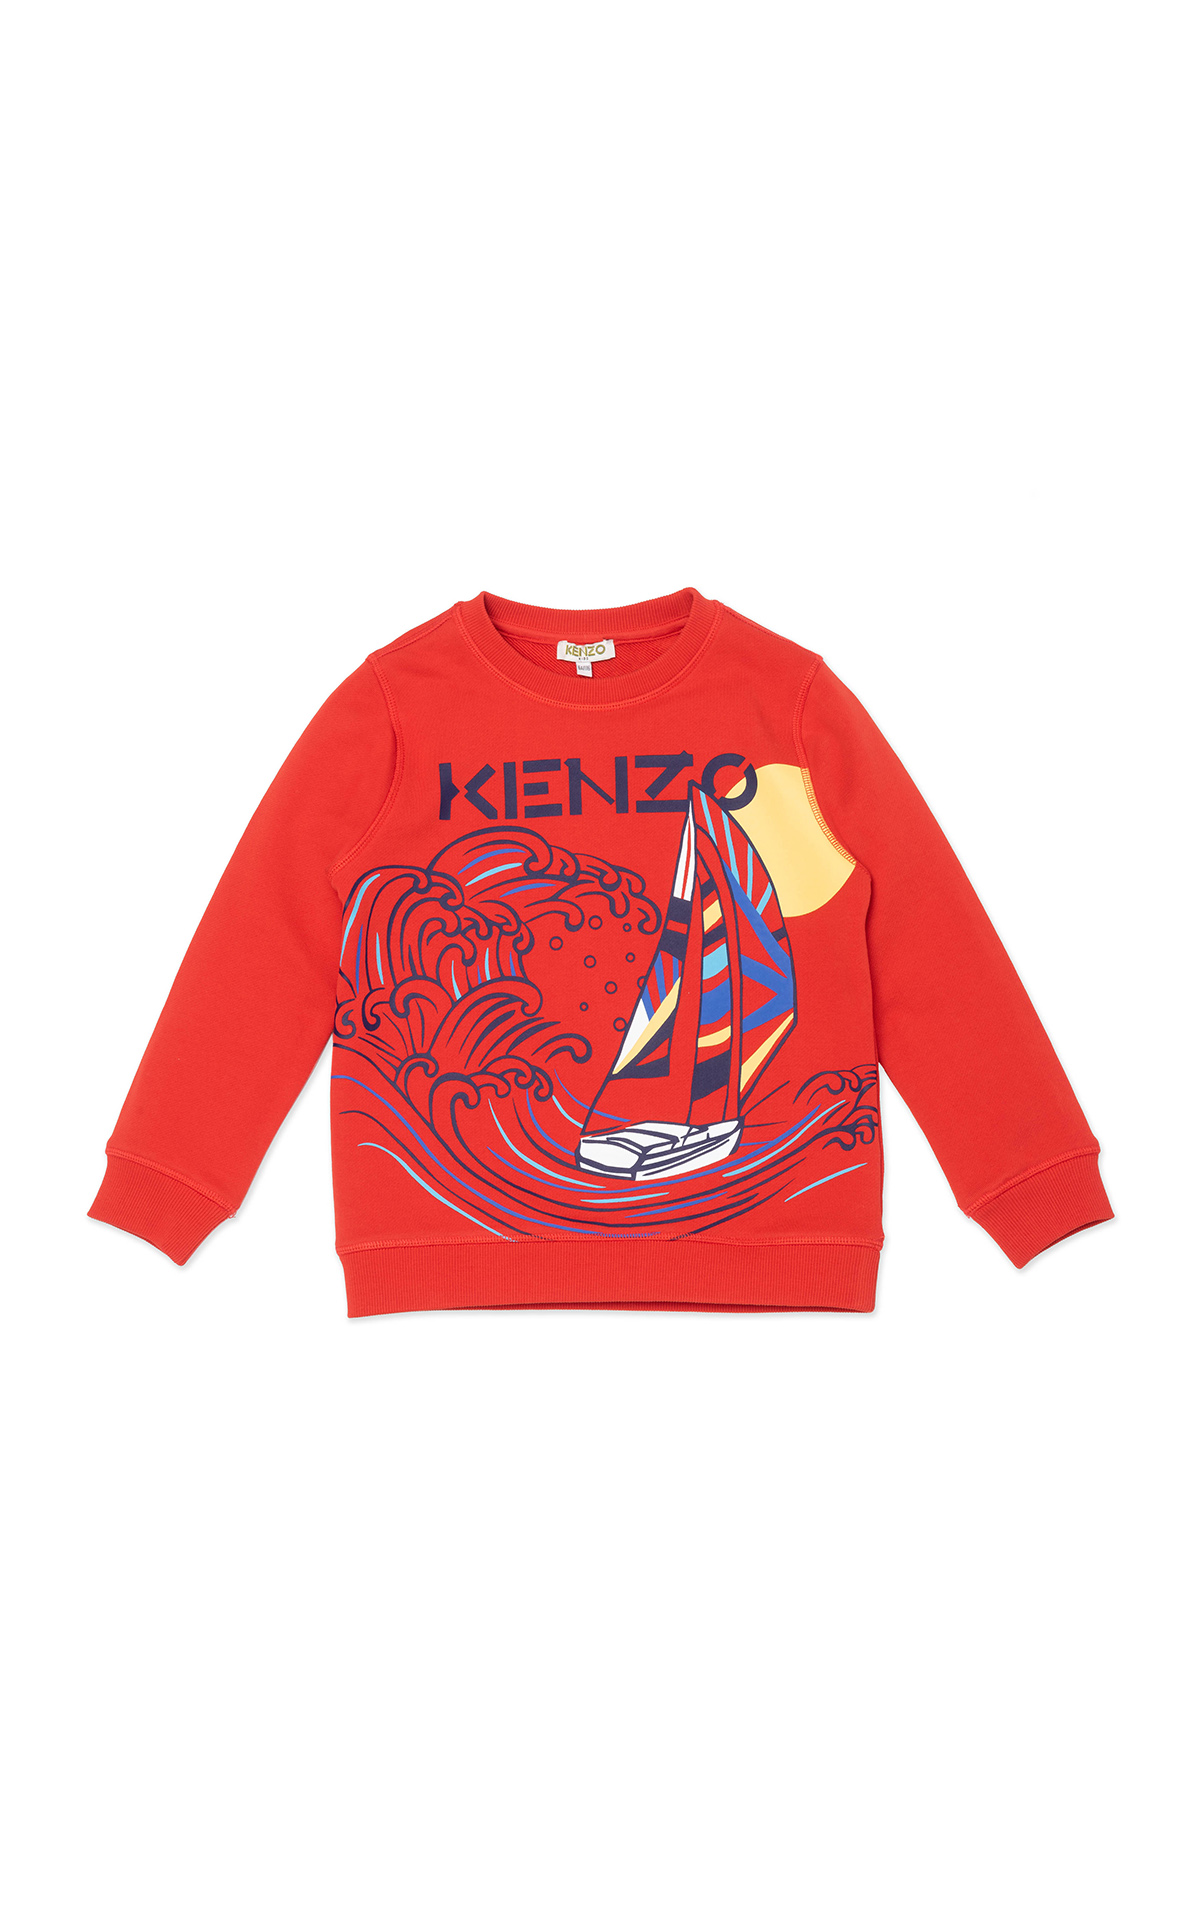 Red sweatshirt kenzo kids around